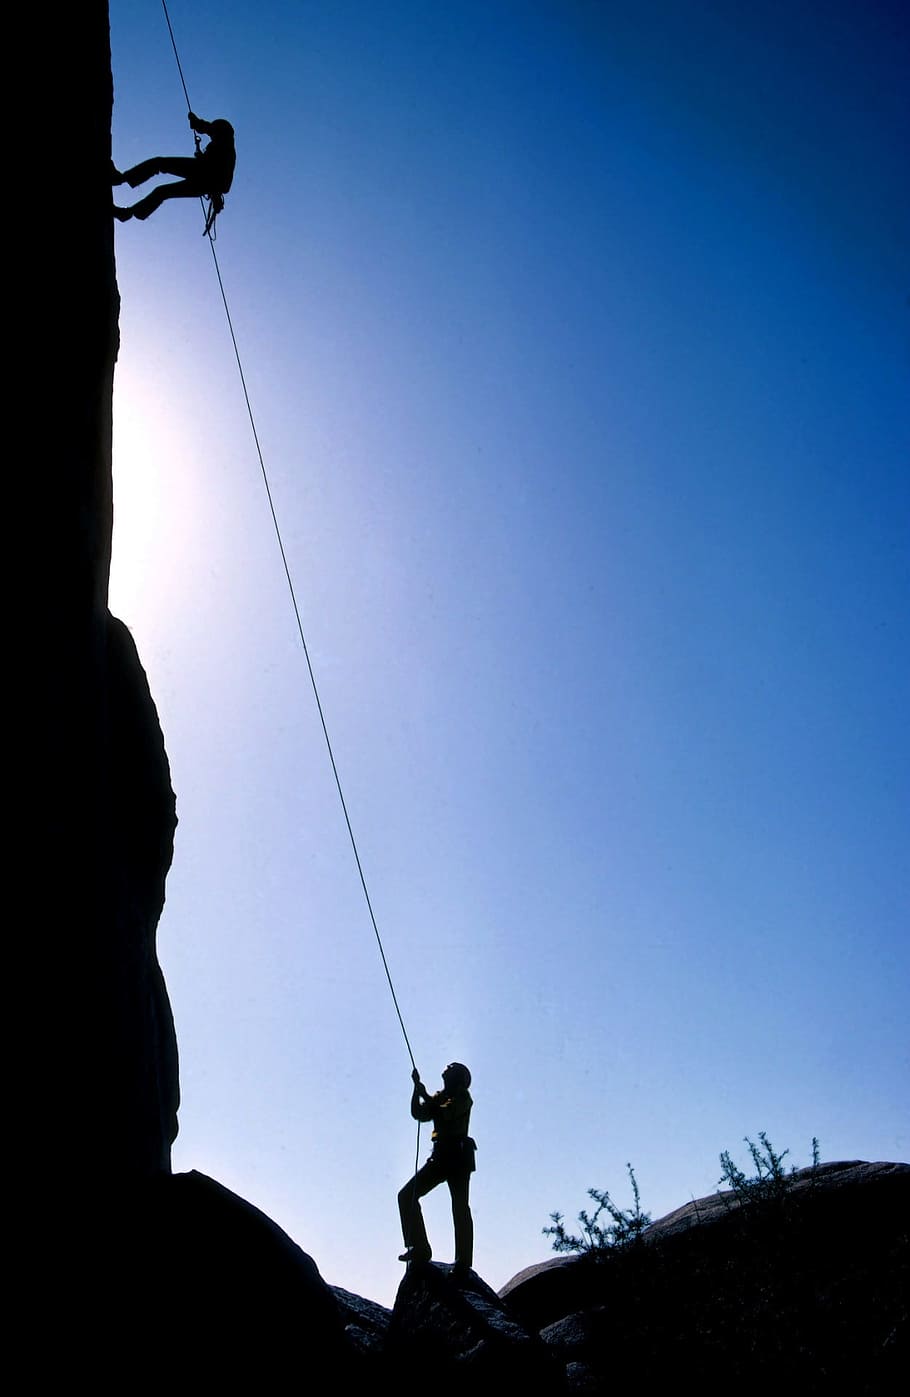 manusia, memanjat, menggunakan, tali, tanah, mencari, pemanjat tebing, kerja tim, puncak, lanskap